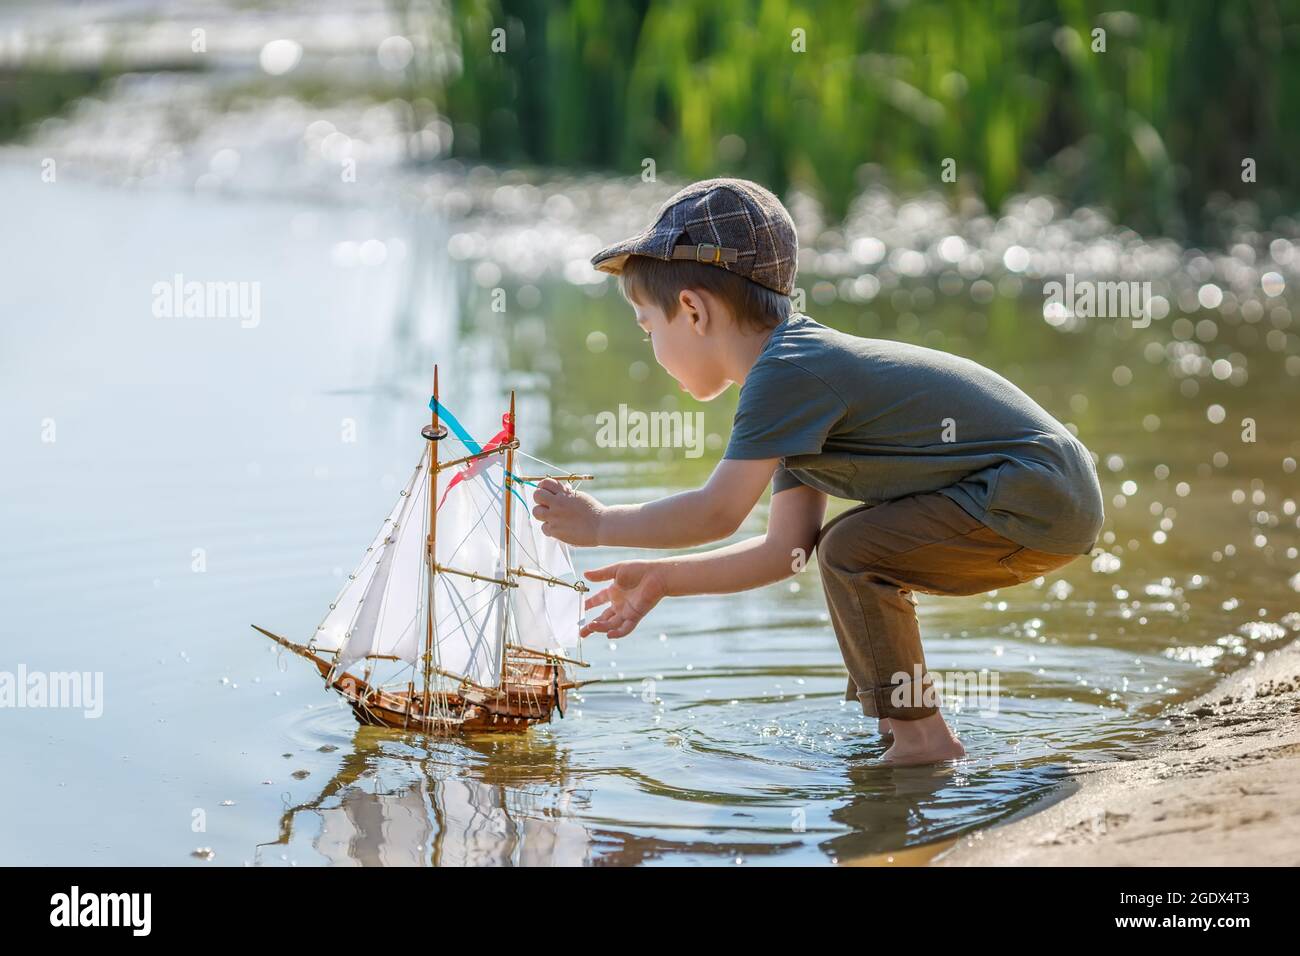 Kleiner Junge in Kappe, der Schiff auf dem Fluss ablauncht Stockfoto